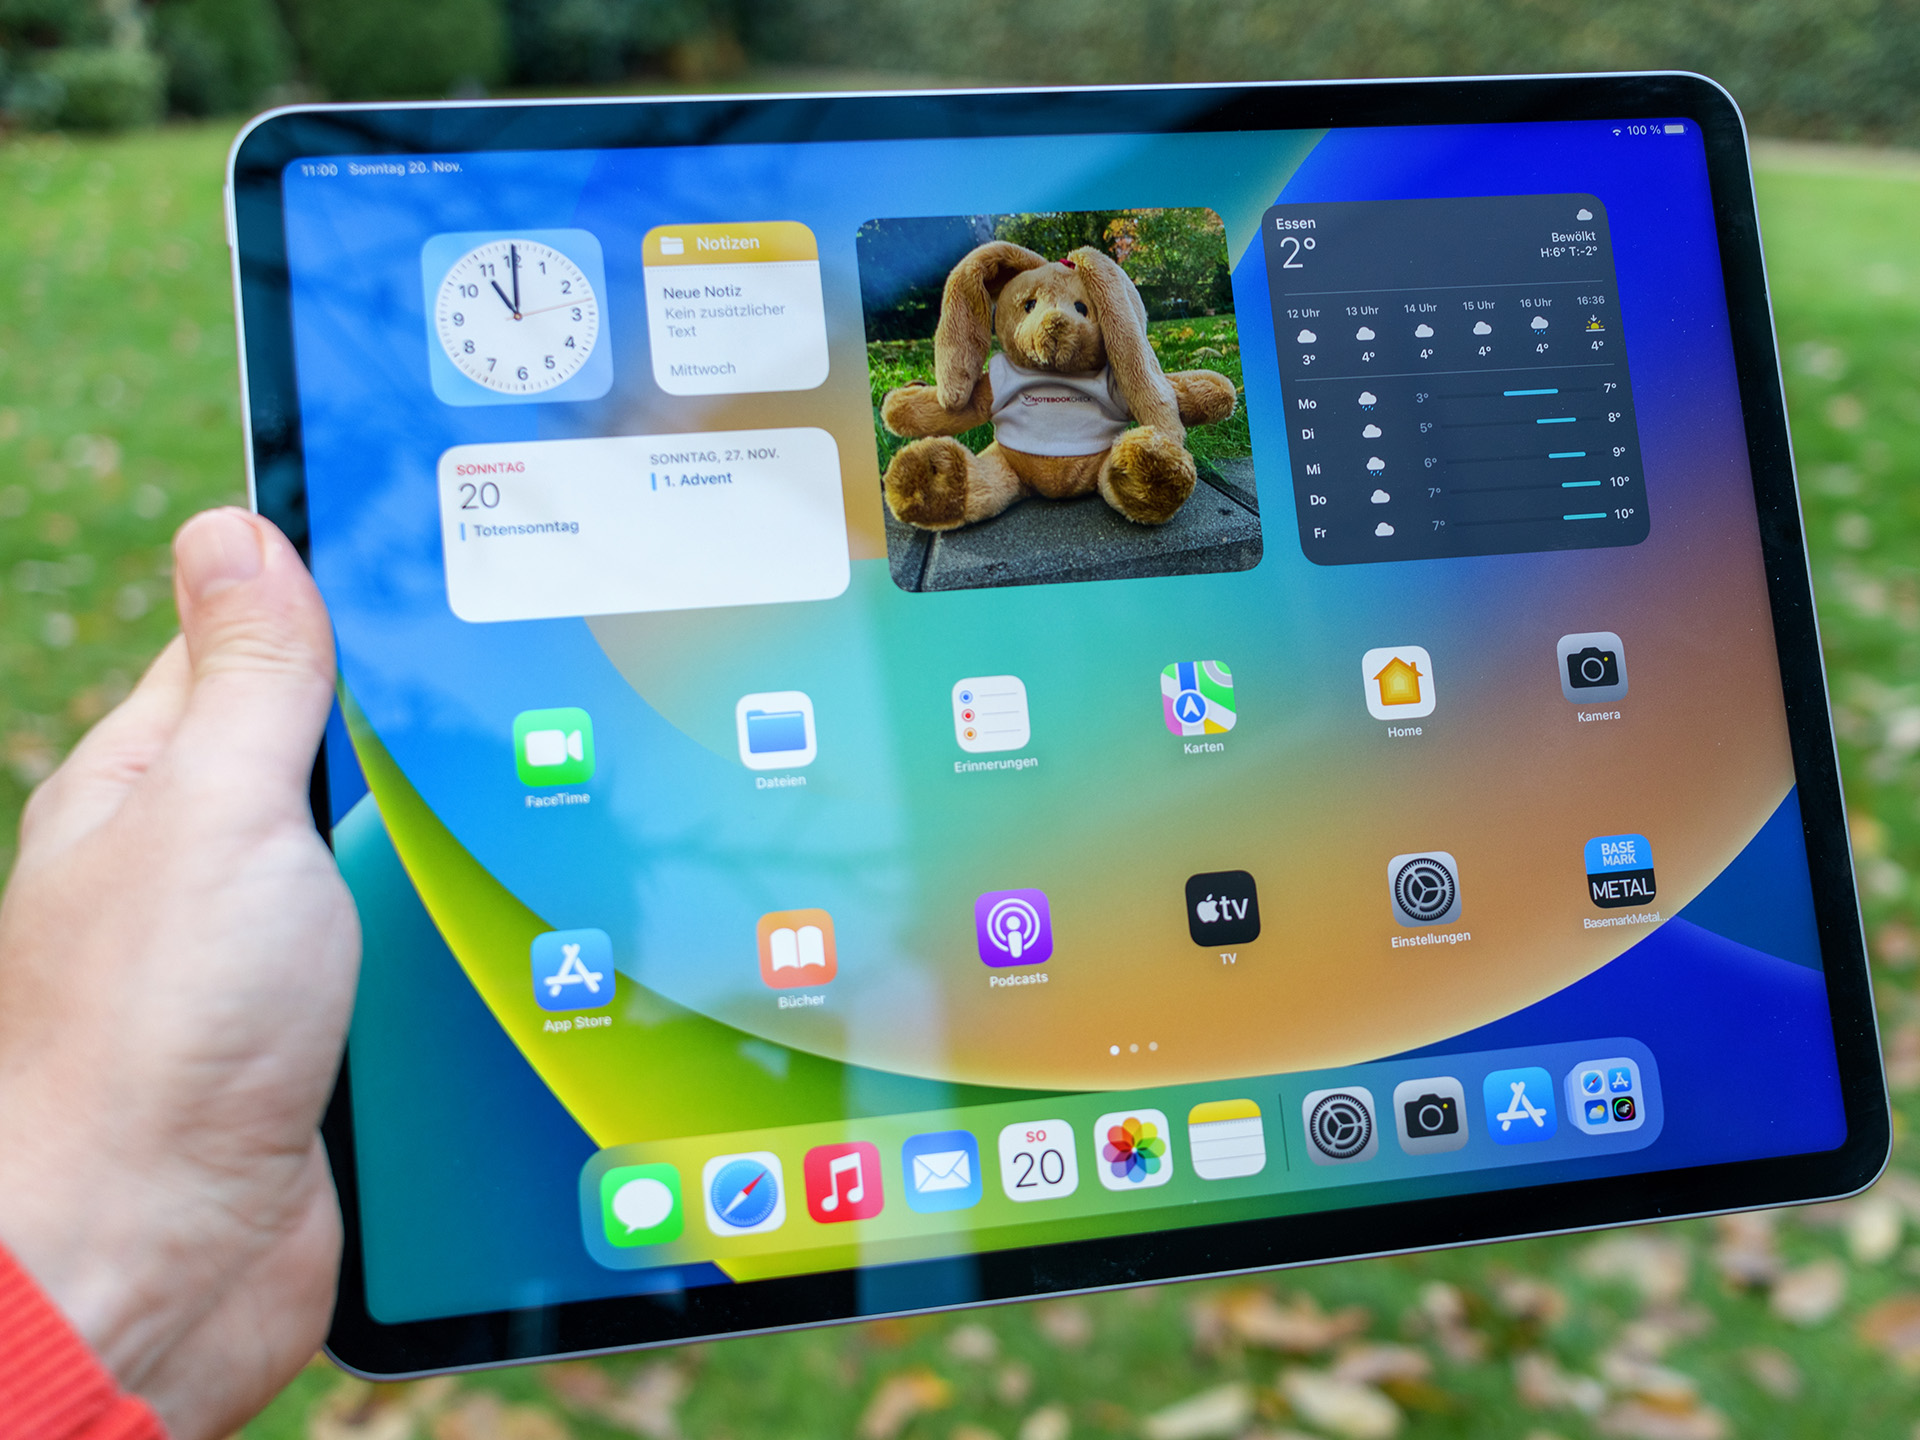 L'iPad Pro 11 (2018) 1 To chute presque au même prix que le modèle